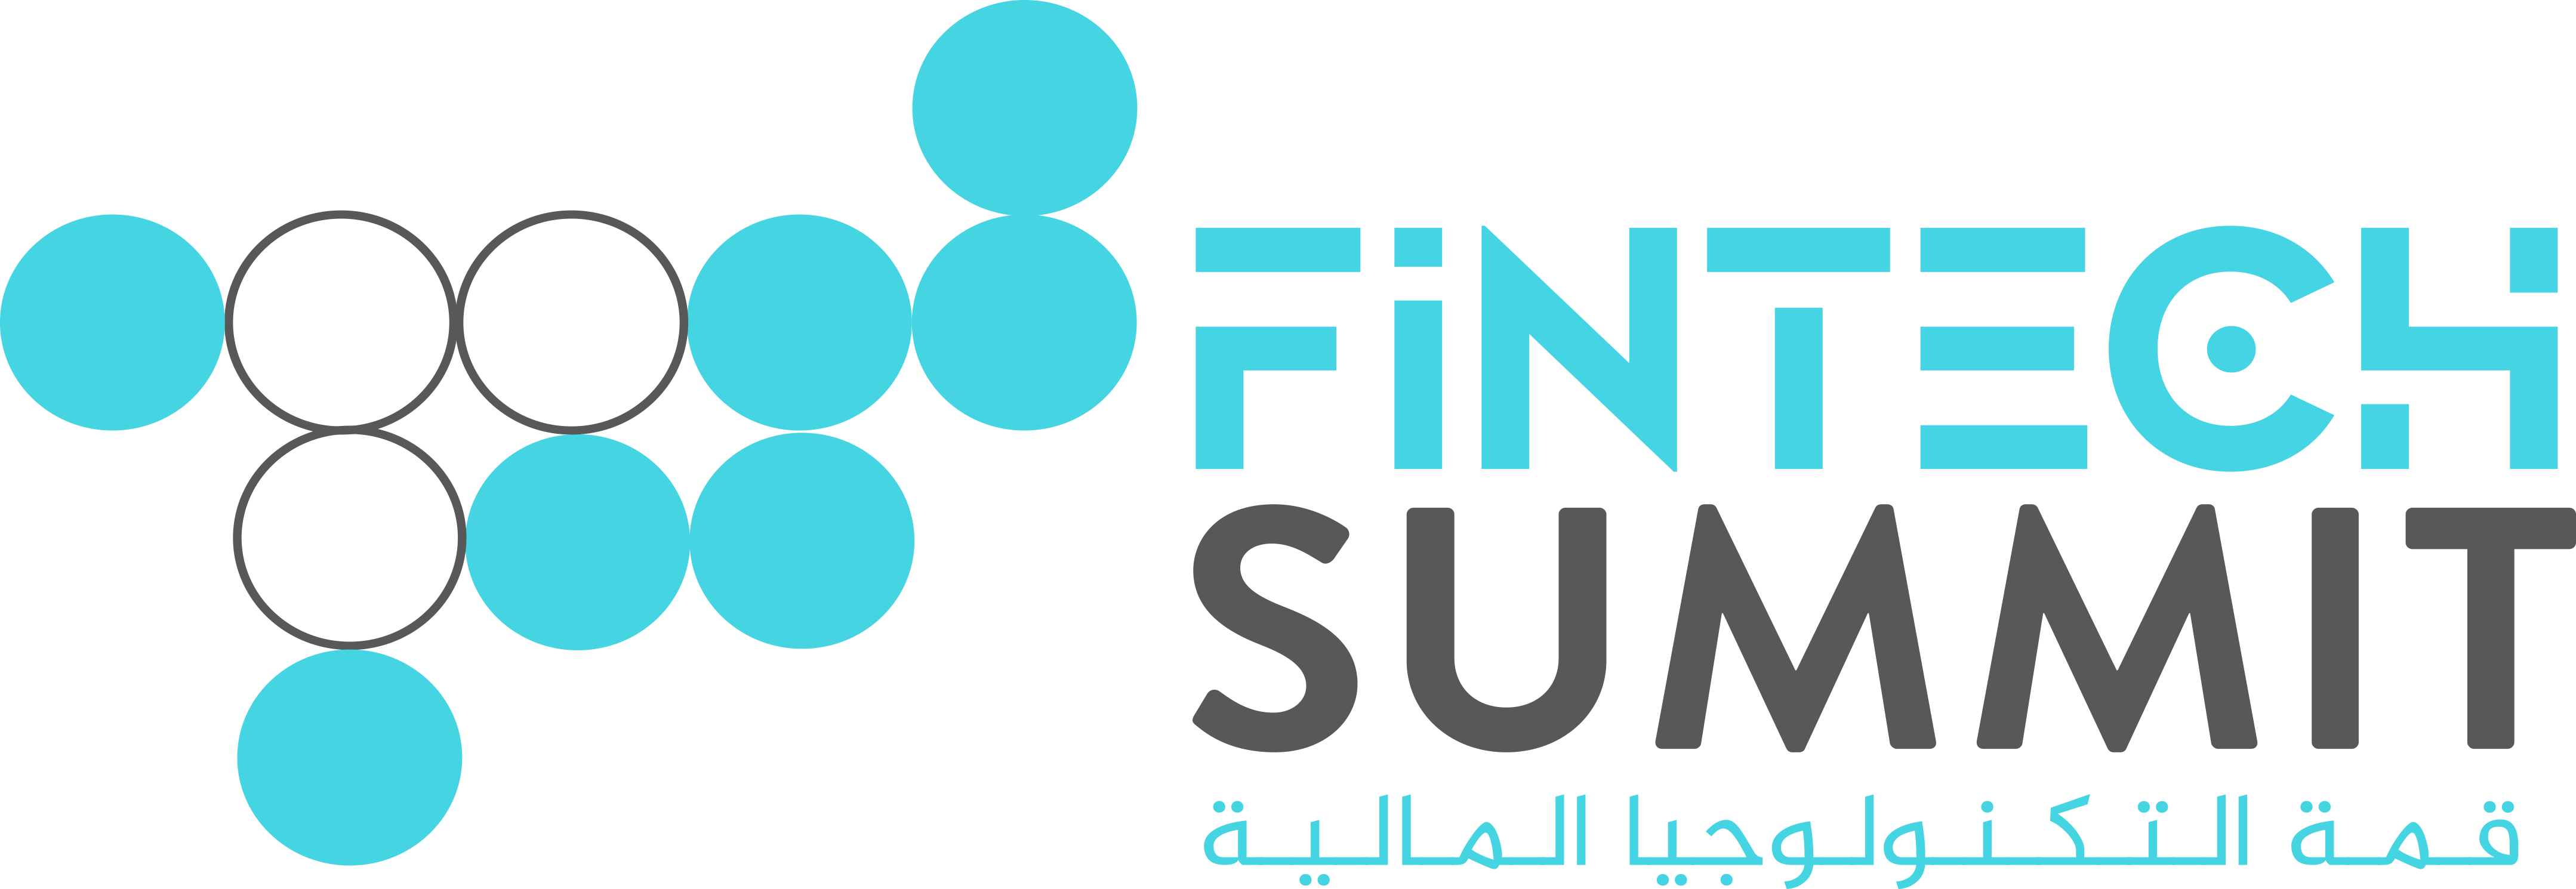 Fintech Summit Middle East قمة التكنولوجيا المالية